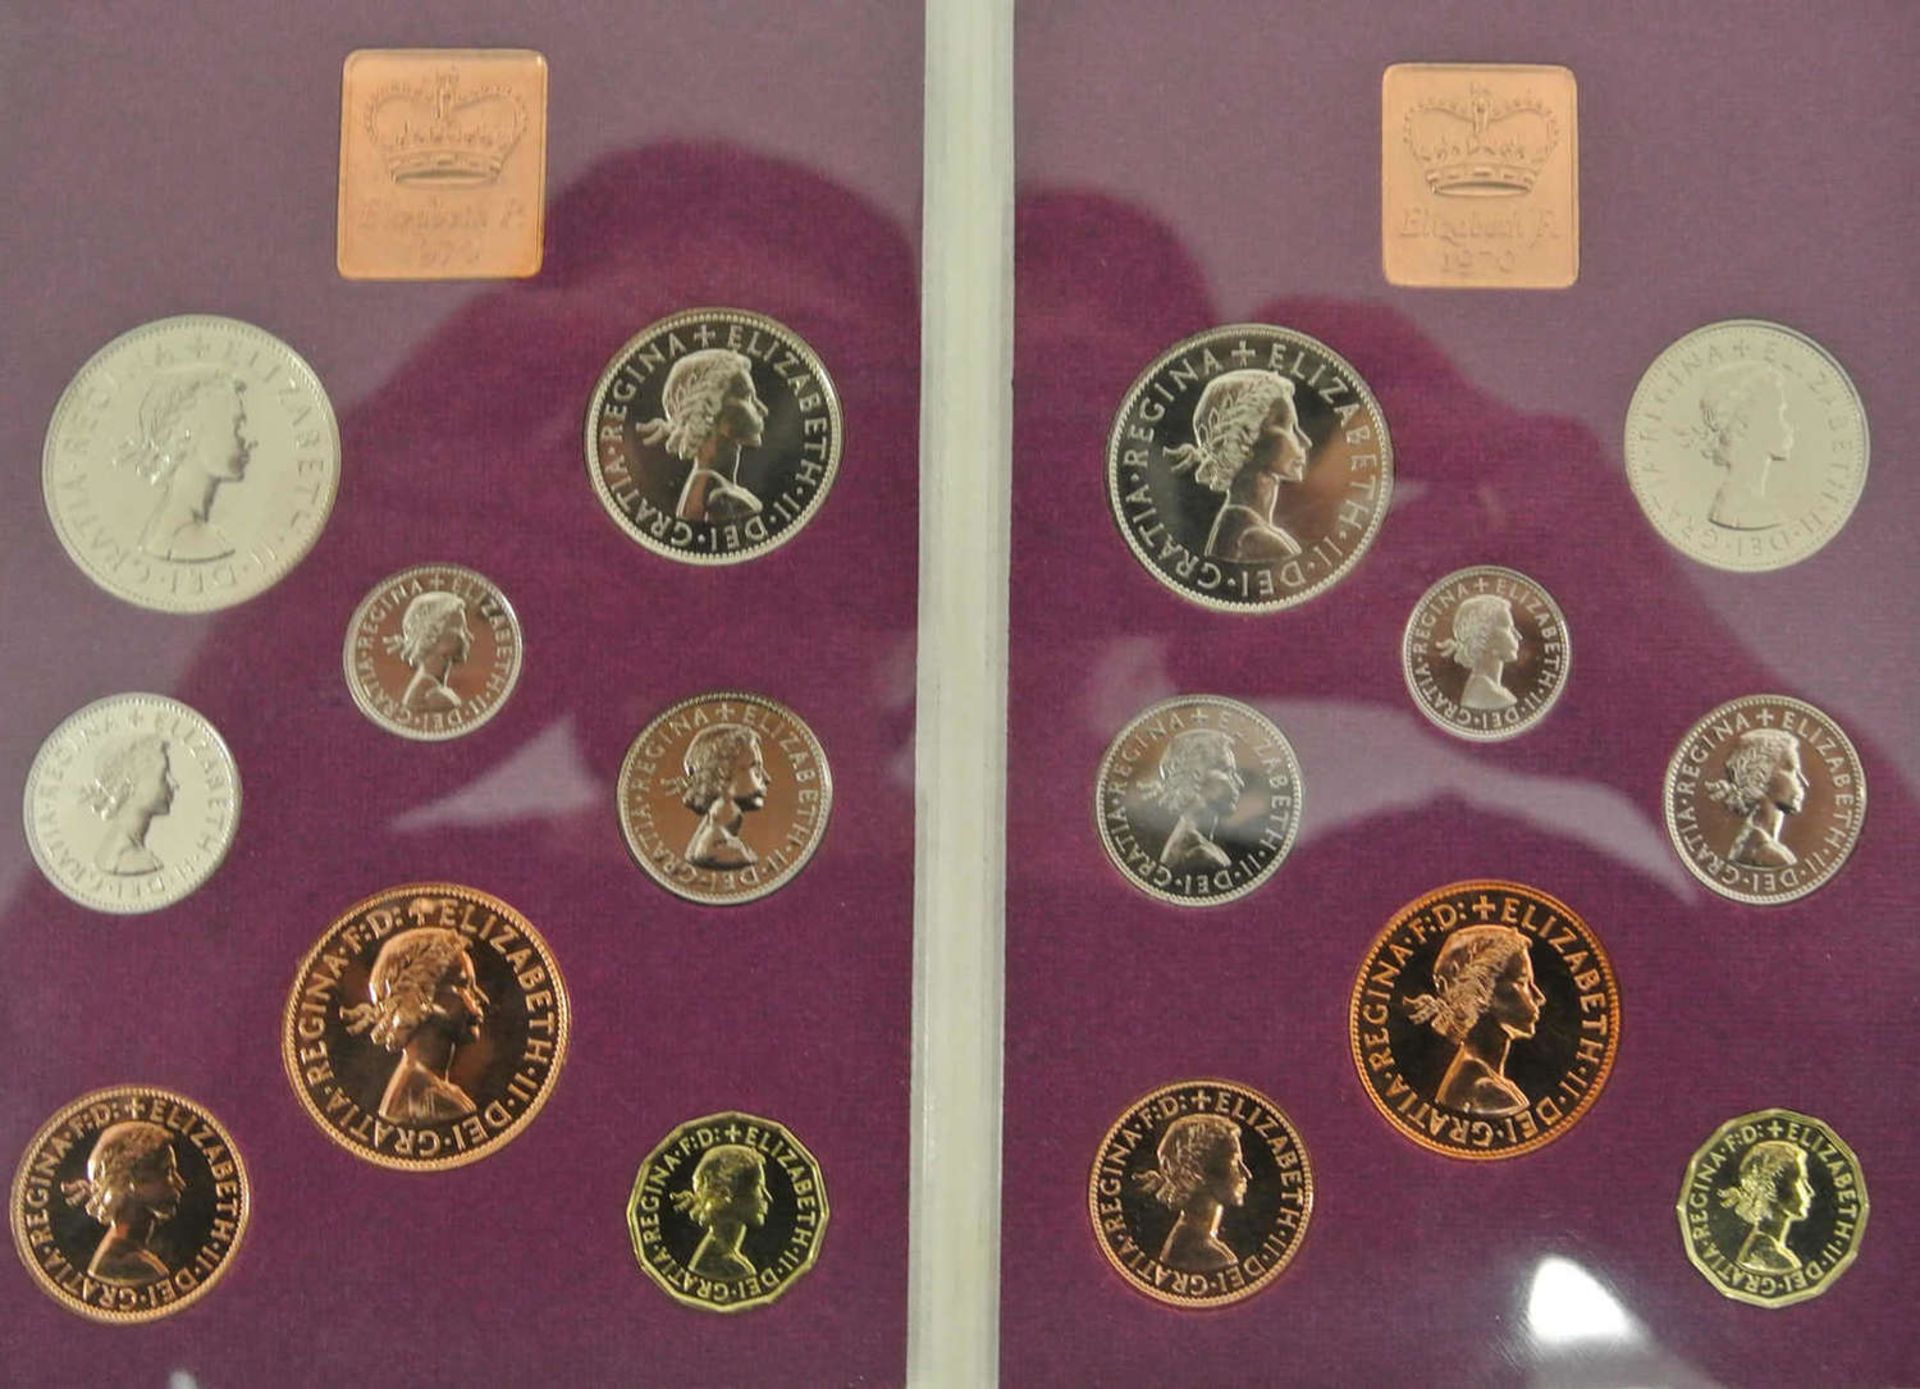 2 Münzsätze von Nordirland und England von 1970 im Original Blister 2 coin sets from Northern - Bild 2 aus 3